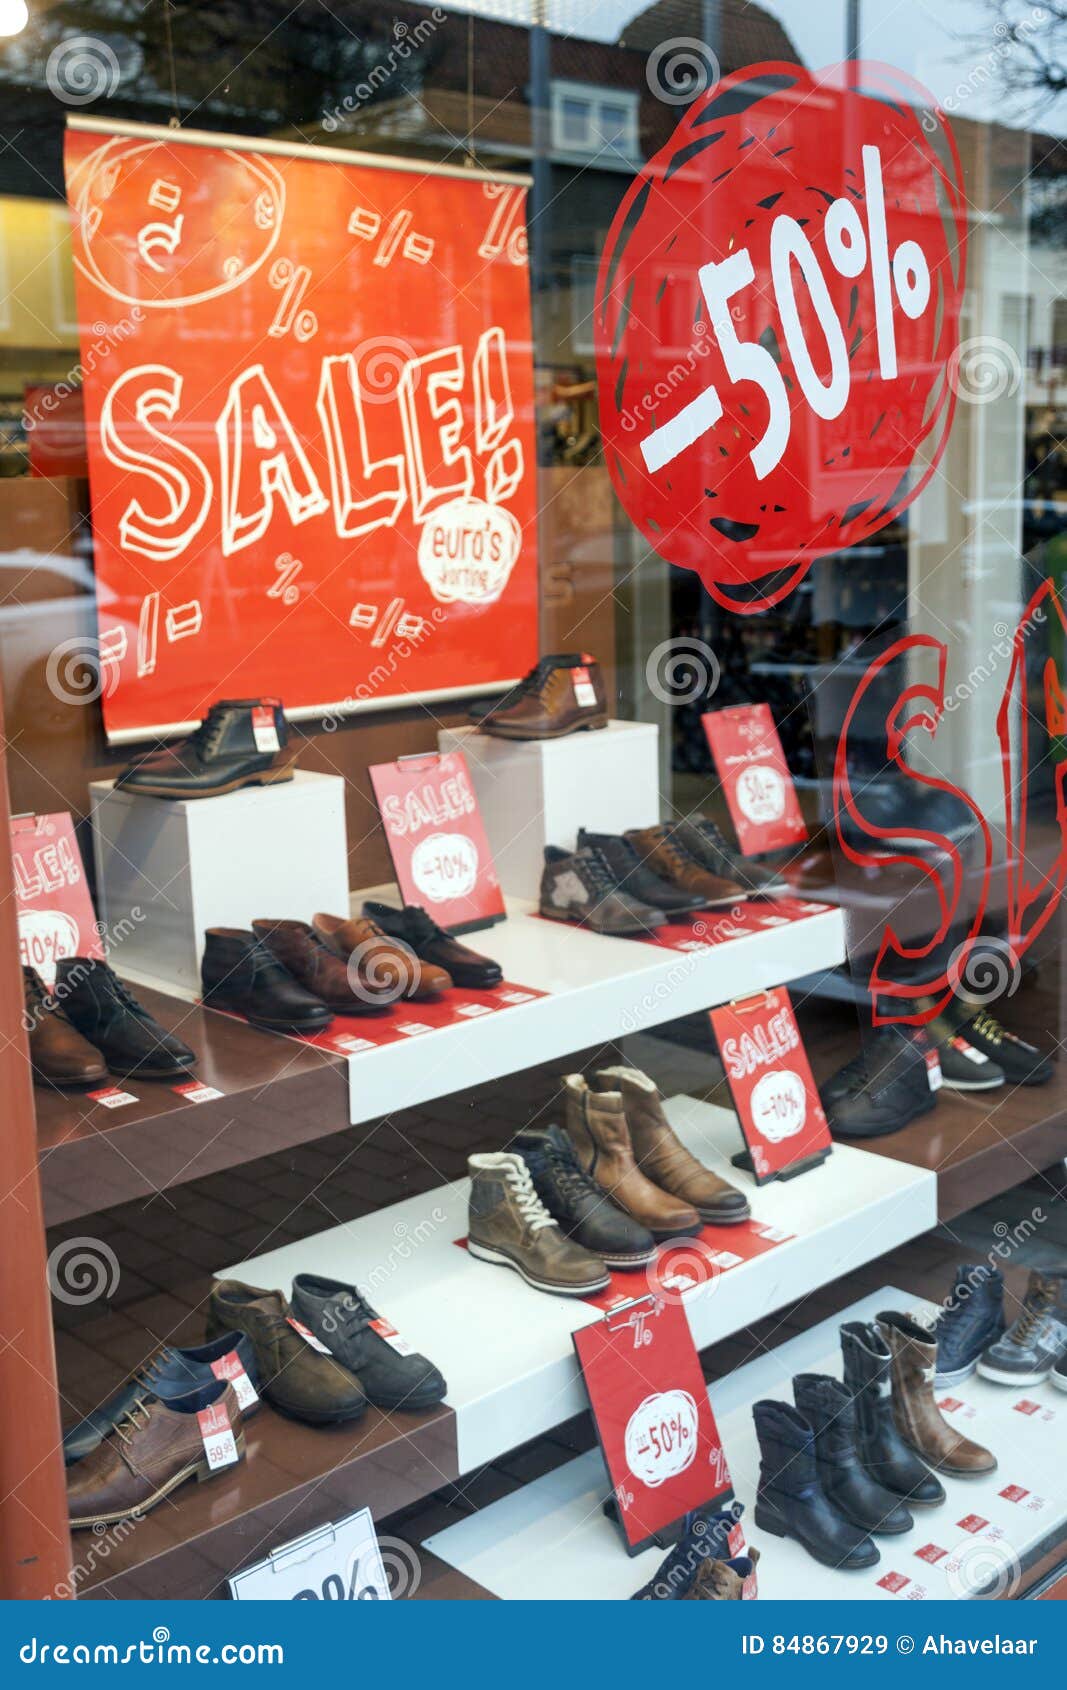 discount shoe websites